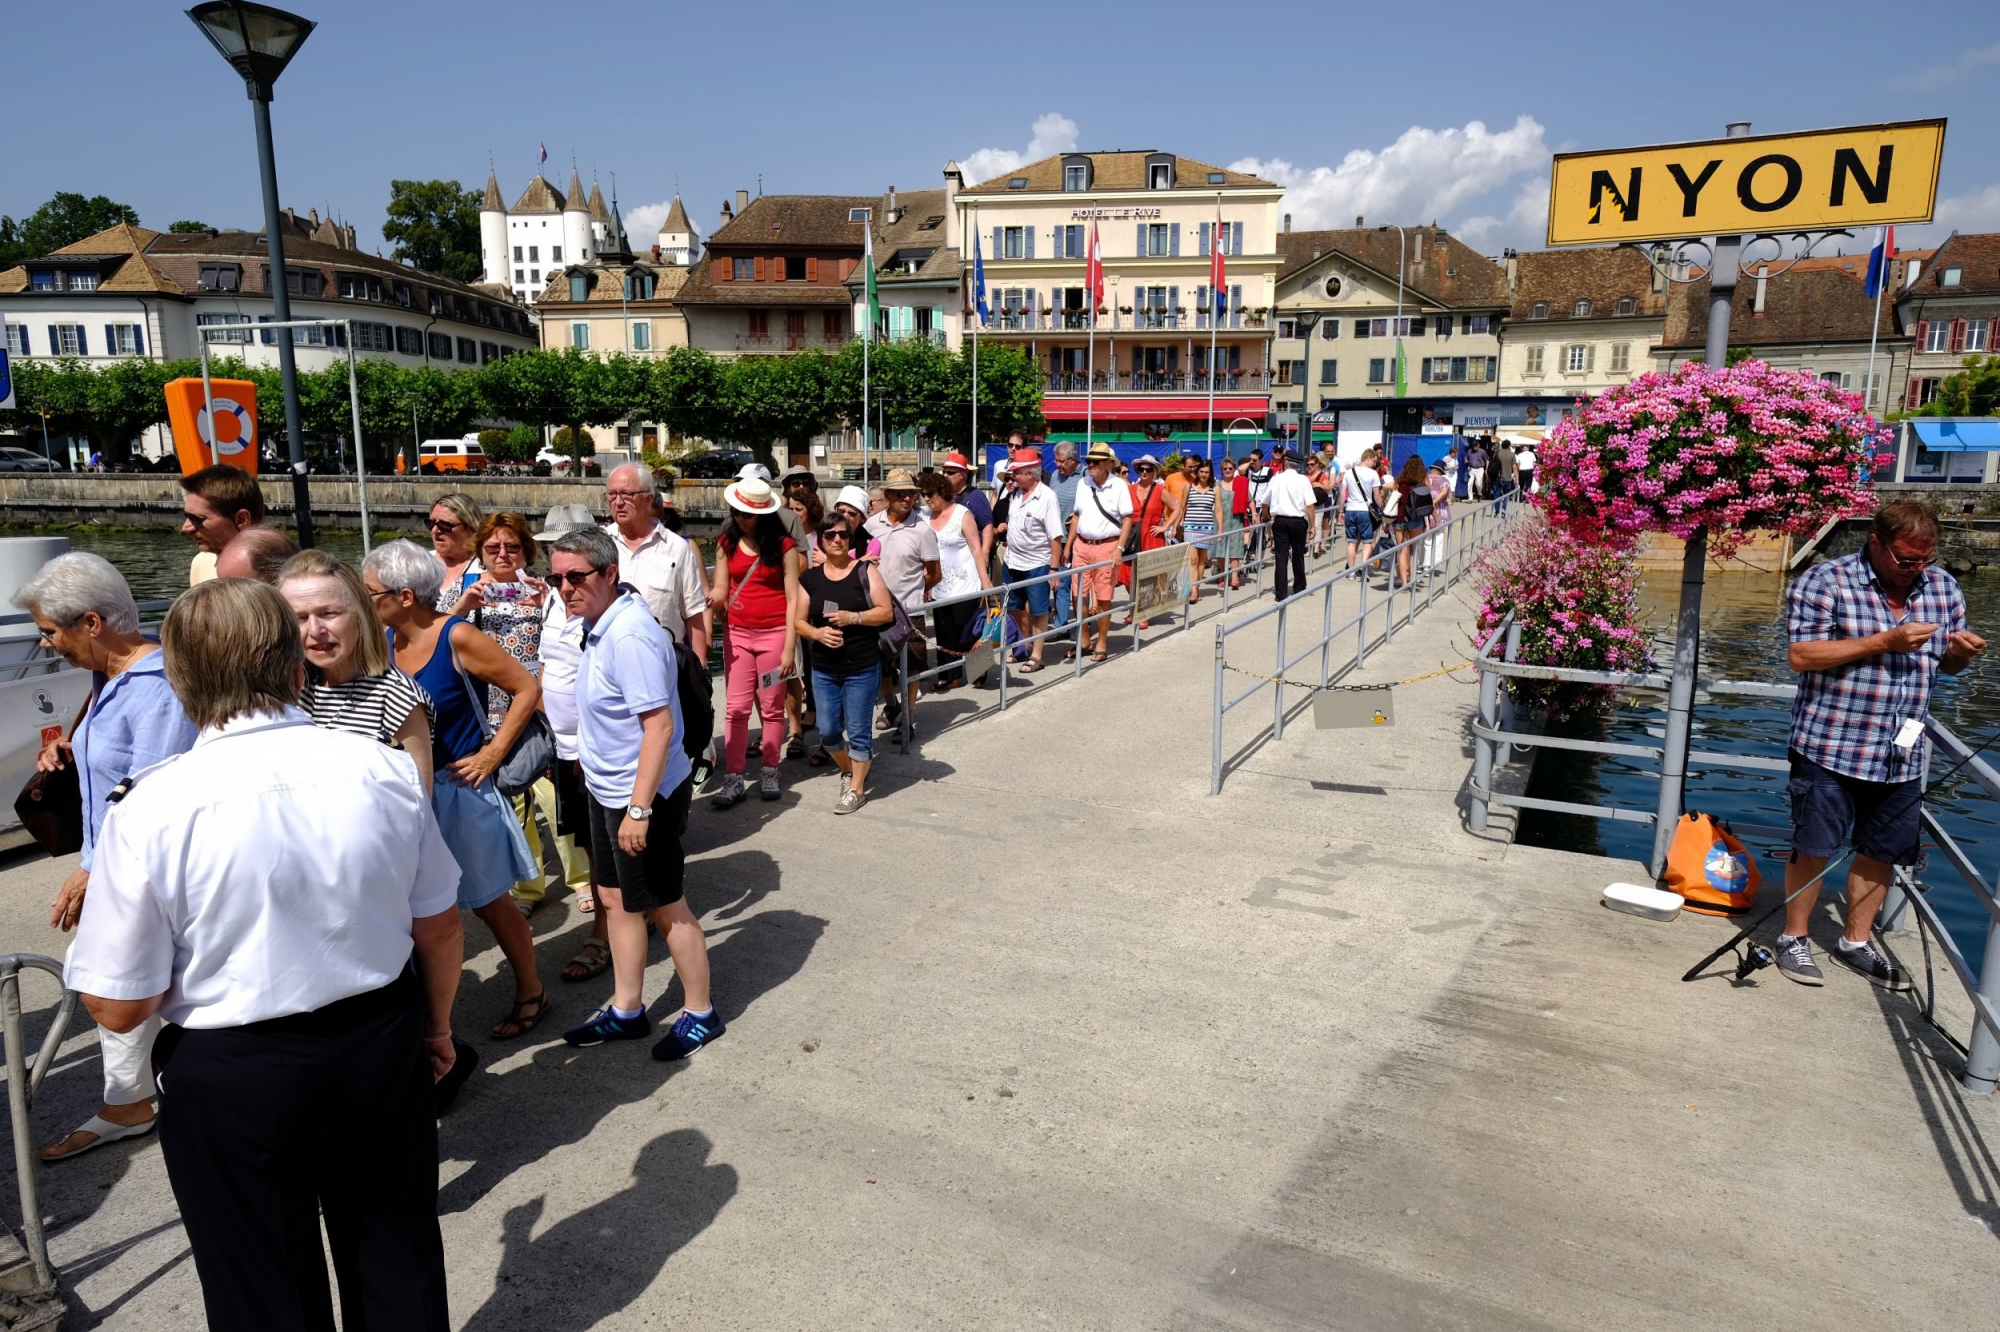 Debarcadere de Nyon les passagers et les touristes débarquent du bâteau de la CGN le Savoie Nyon le 21.7.2016 © photo Michel Perret Debarcadere_Nyon_CGN_21_7_2016